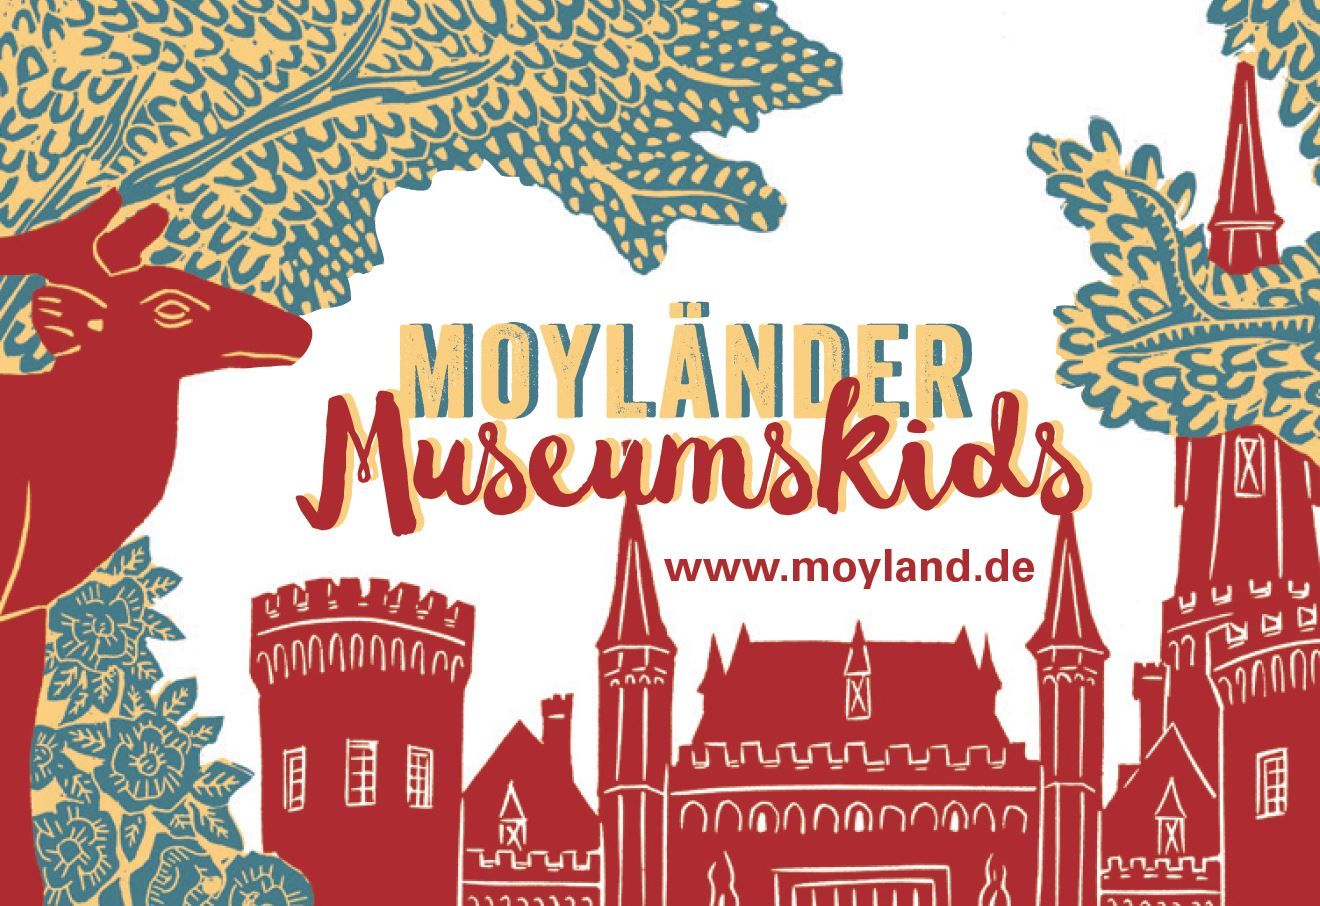 Zeichnung des Schlosses in rot-grün-gelb mit Schriftzug Moyländer Museumskids